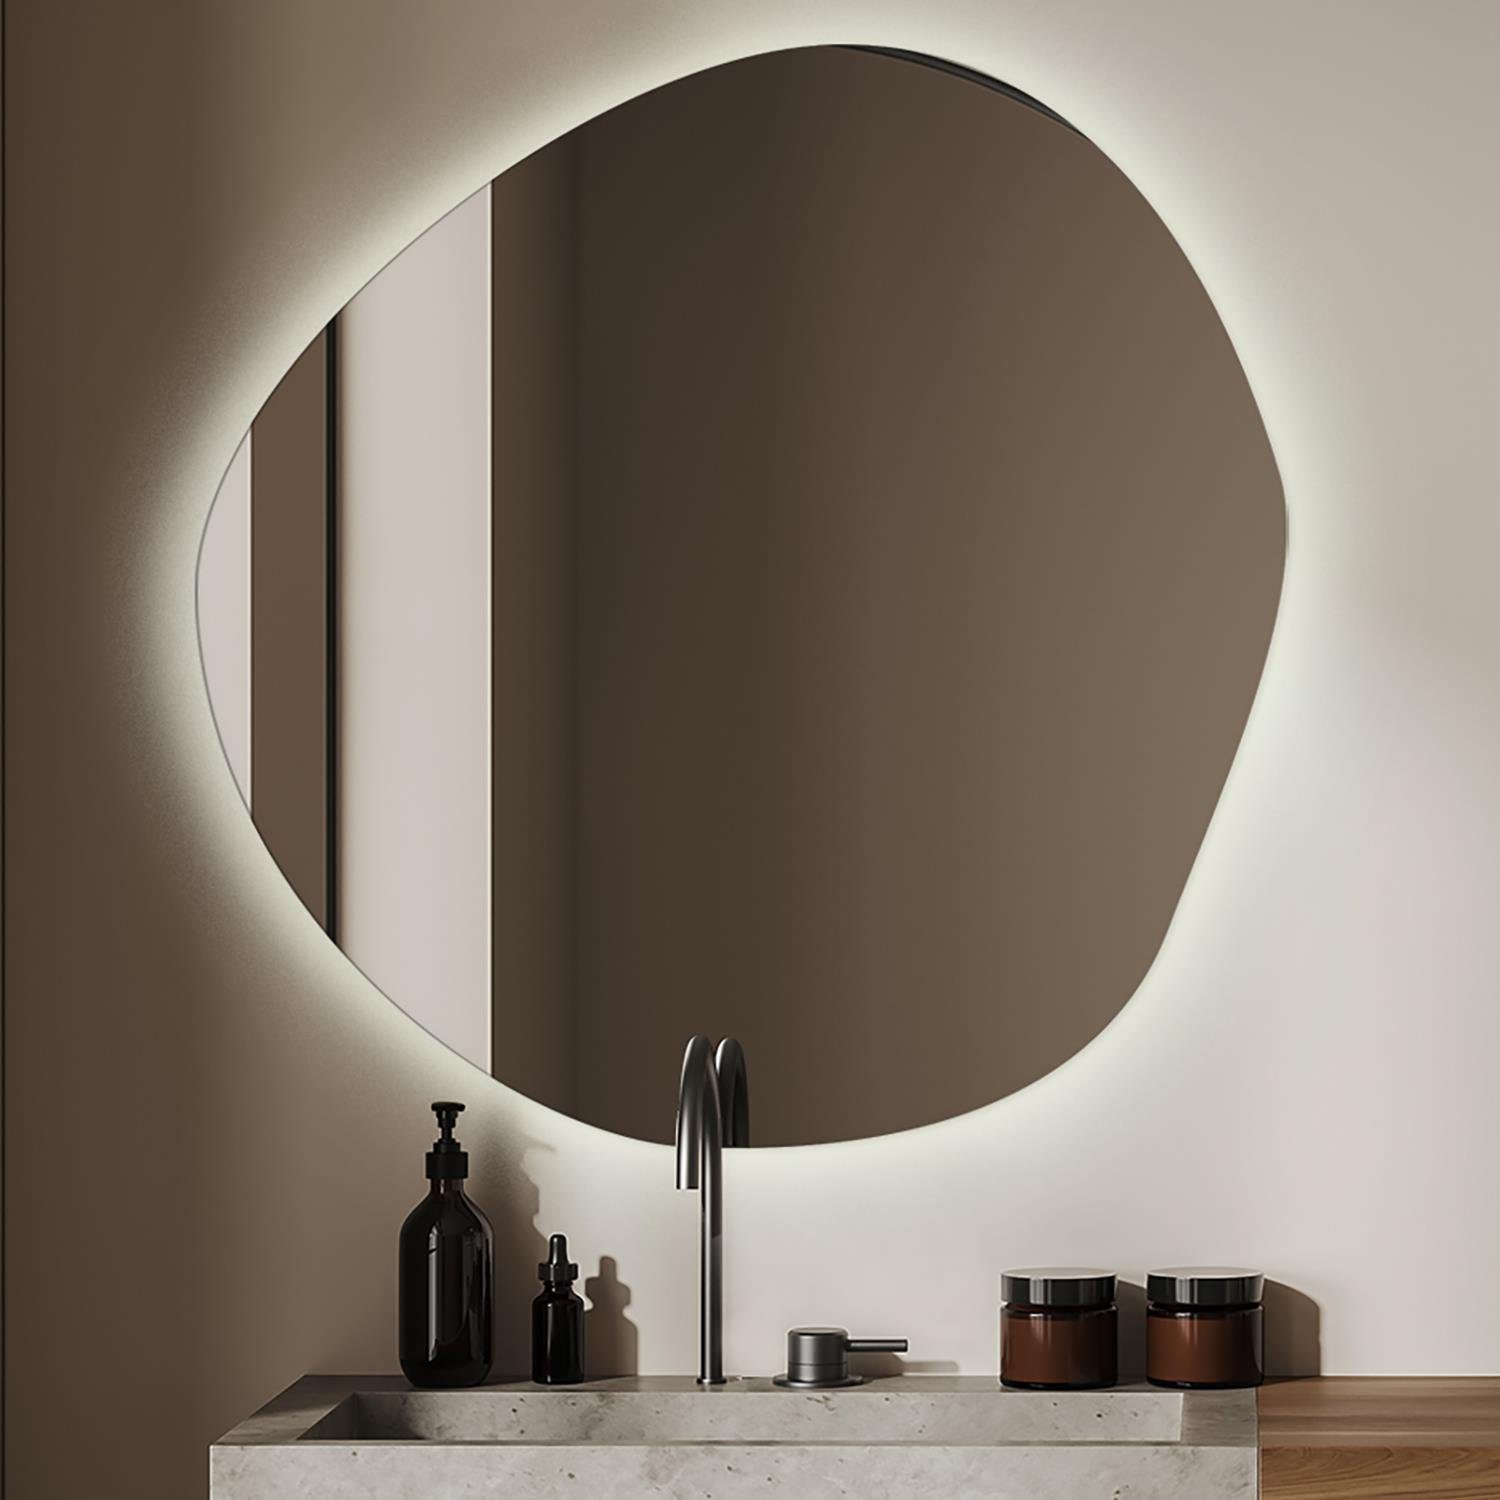 https://i.otto.de/i/otto/a7d84f30-58fa-4bba-b009-5a3374ca16f4/tulup-led-lichtspiegel-badspiegel-led-modern-spiegel-beleuchtung-warmweiss-3000k.jpg?$formatz$